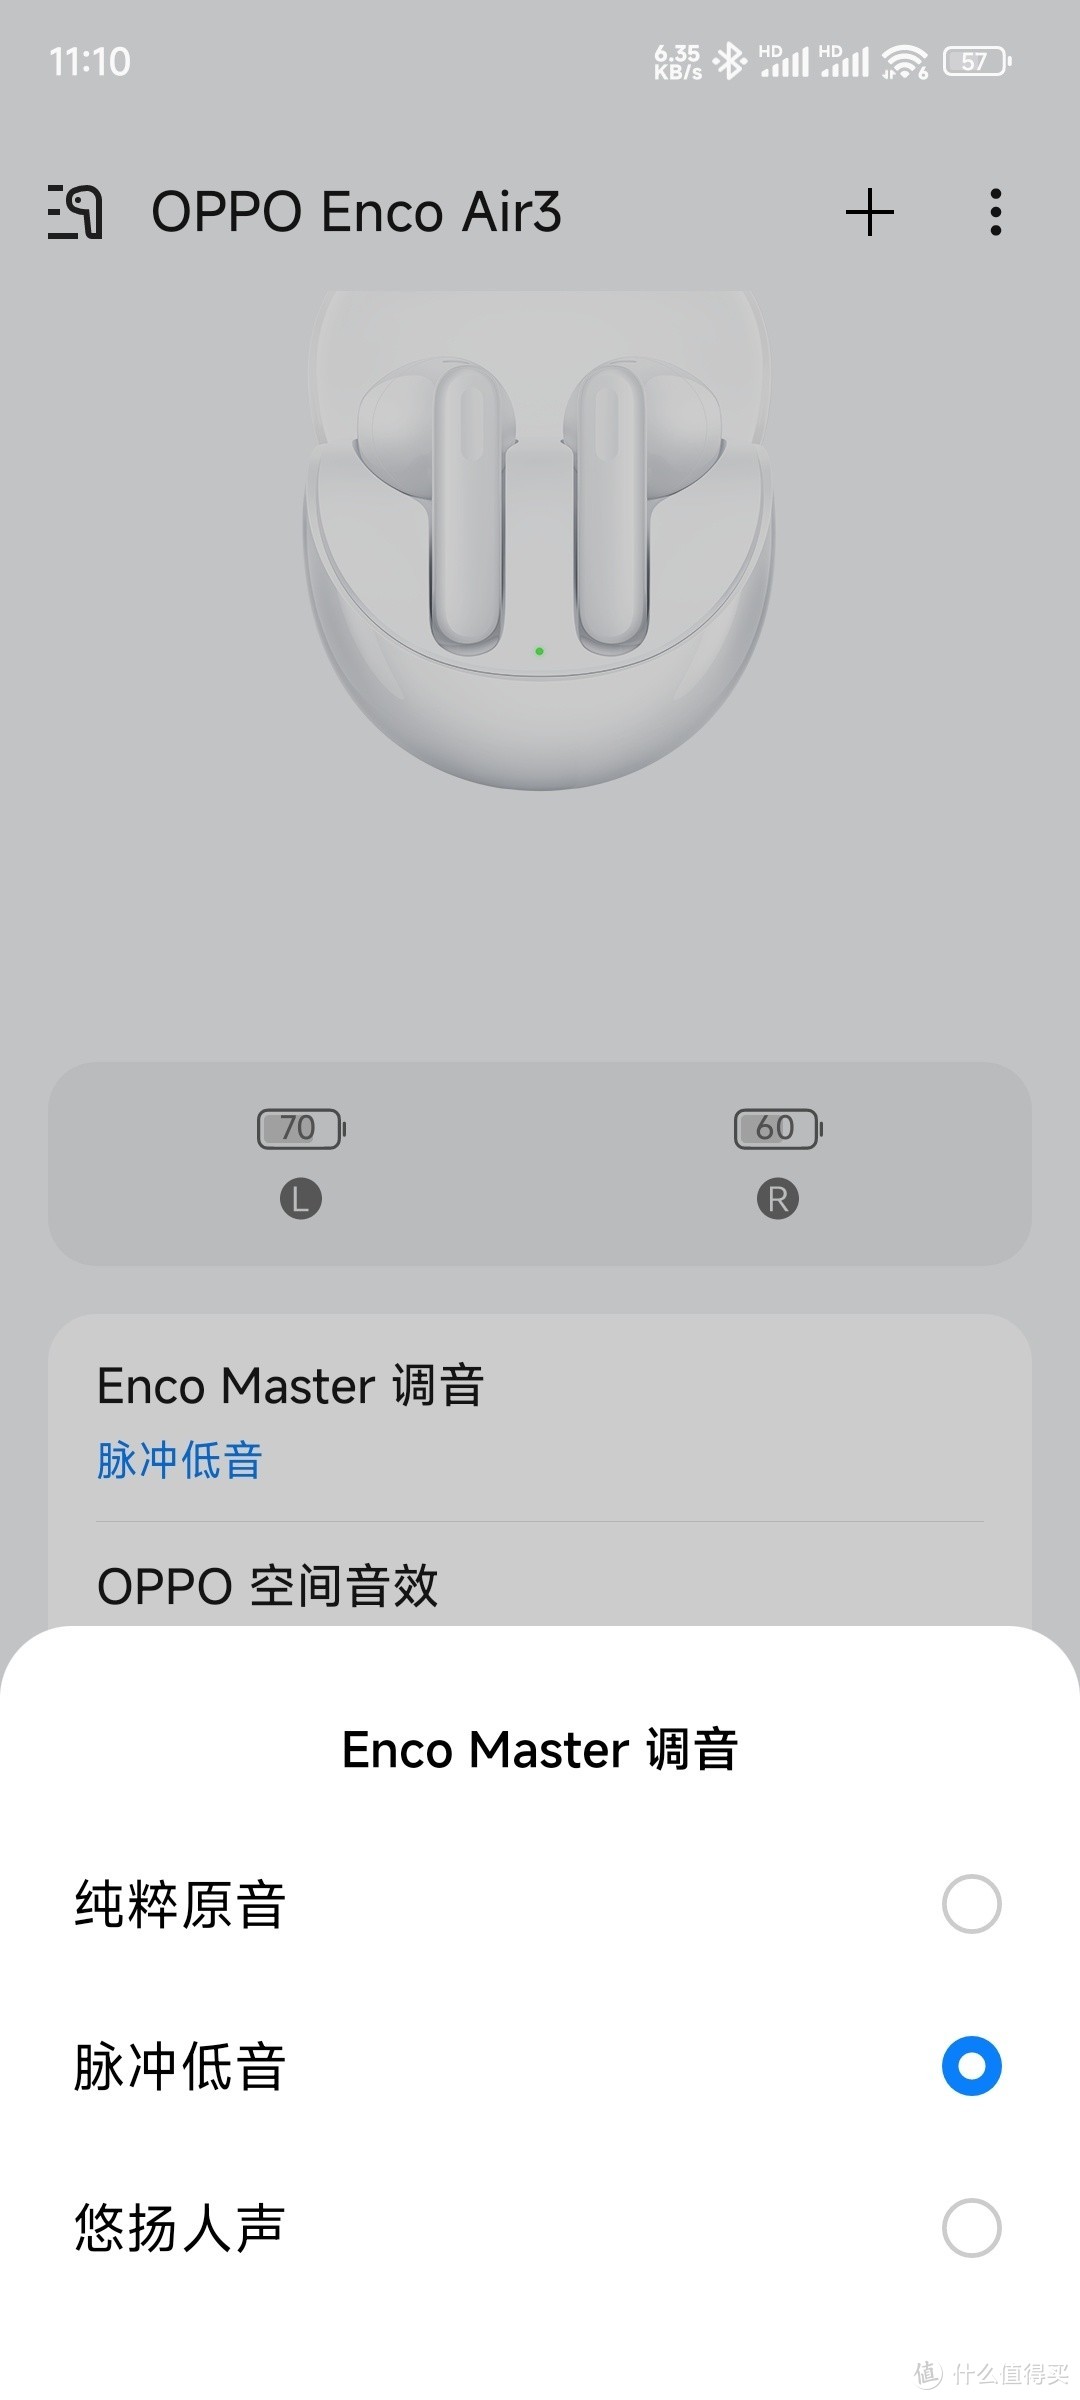 爱回收卖2换1，换得OPPO Enco Air3蓝牙耳机作为礼物